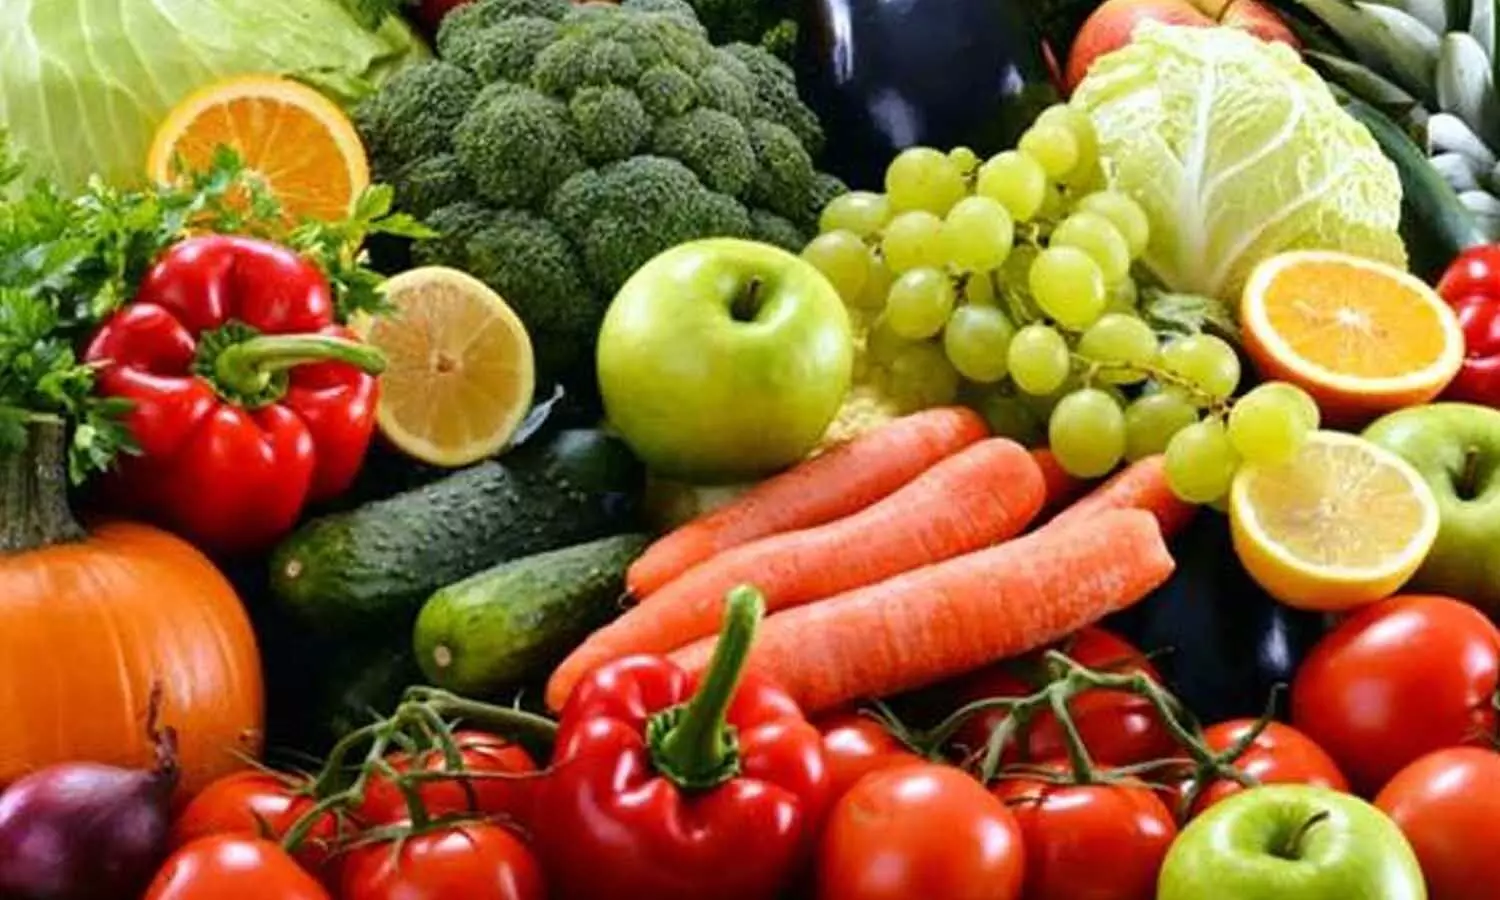 इन फल और सब्जियों से इम्यूनिटी करें बूस्ट, मानसून में बीमारियां रहेंगी दूर